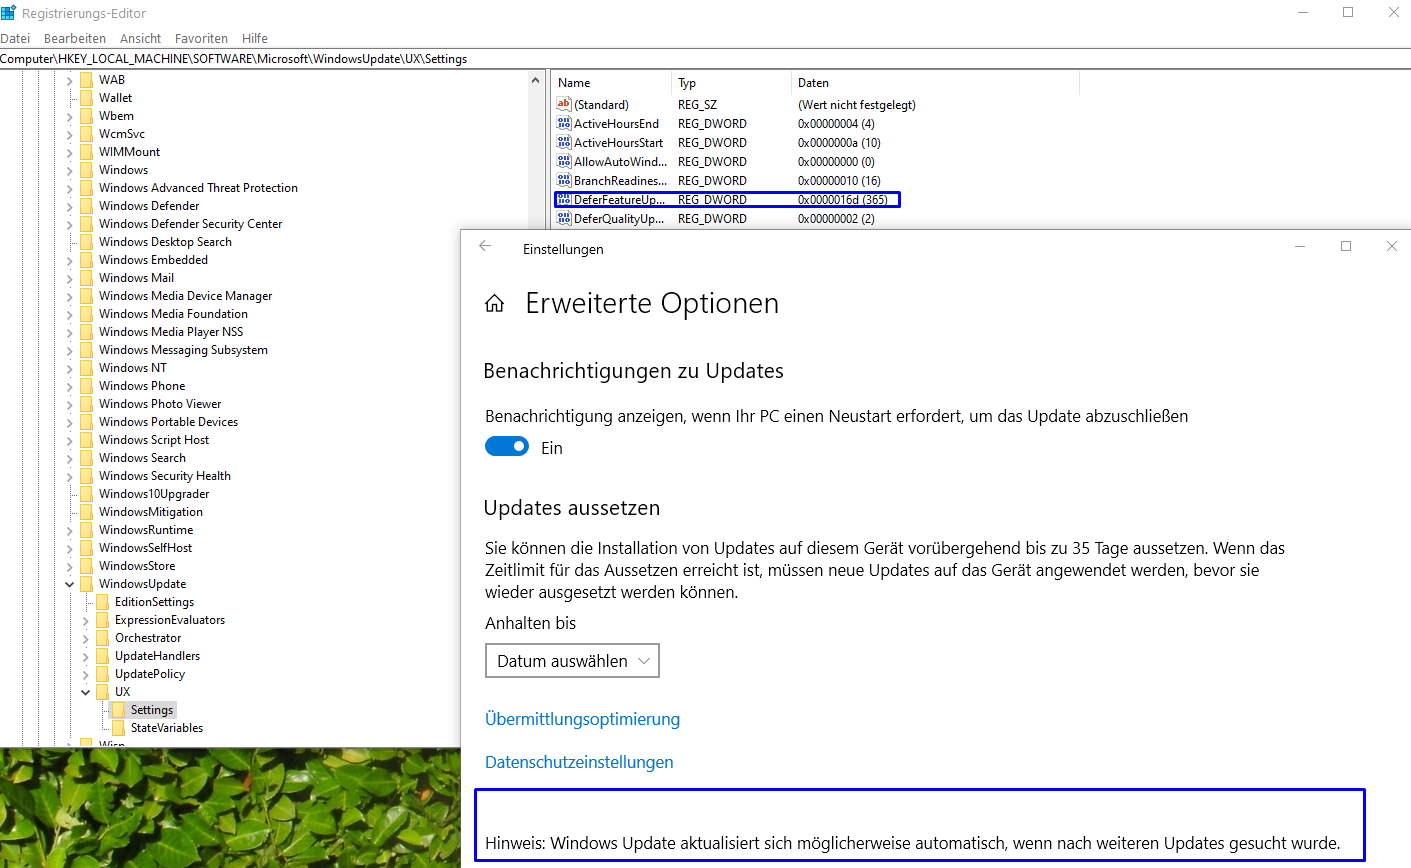 Windows10  blockiert Update bei Pro Versionen 1903 wegen Funktions-Qualitätsupdate in den...